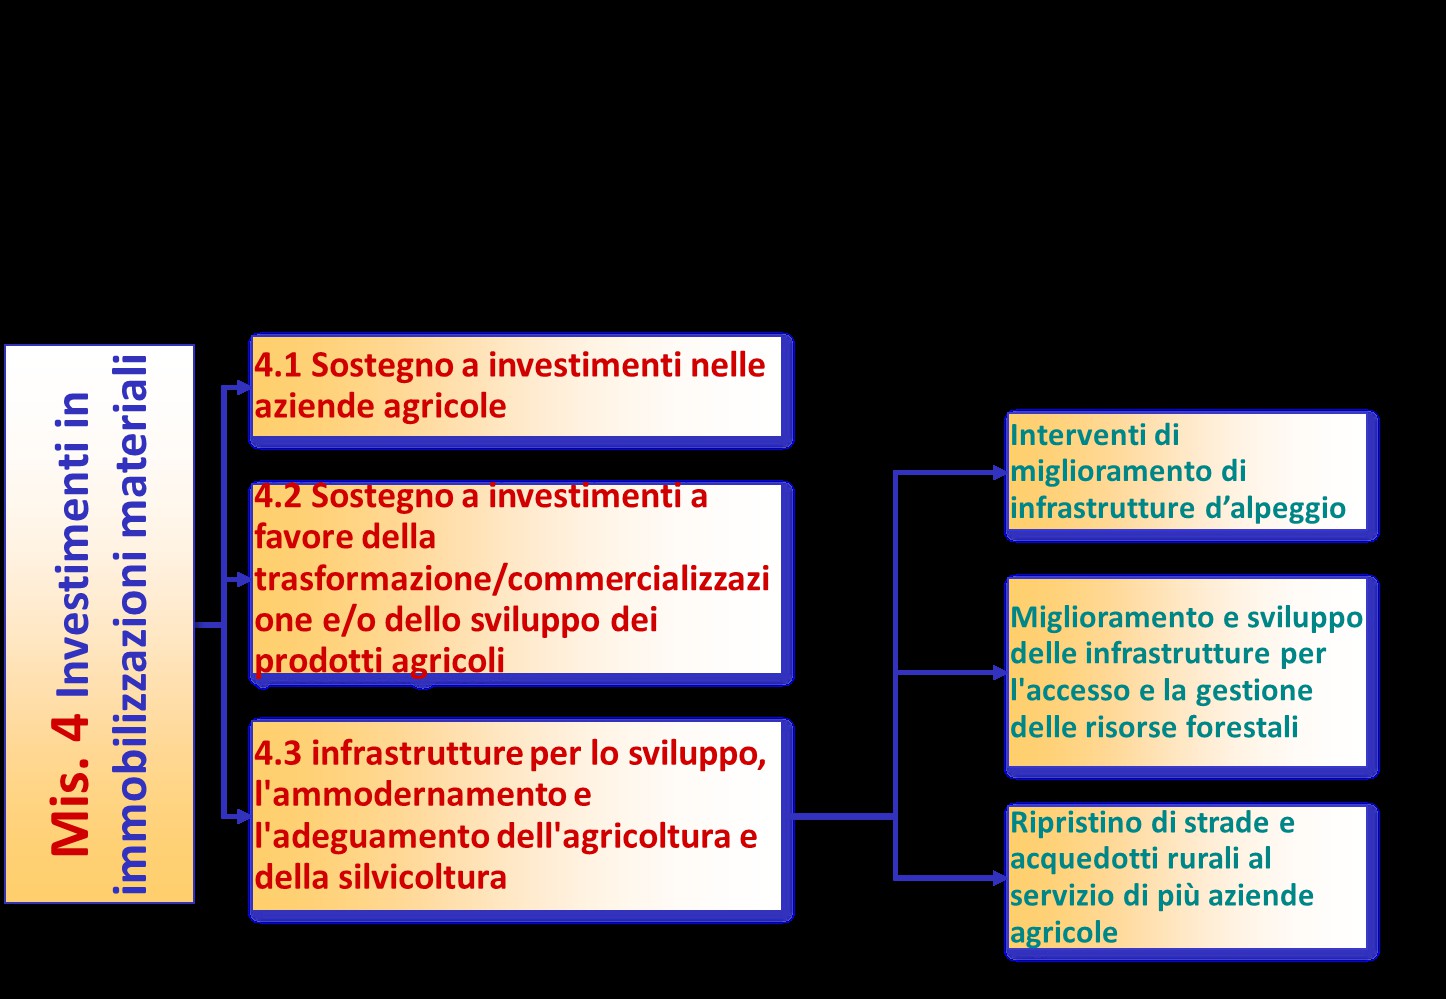 Fondi strutturali e di investimento europei 2014-2020 Mis.